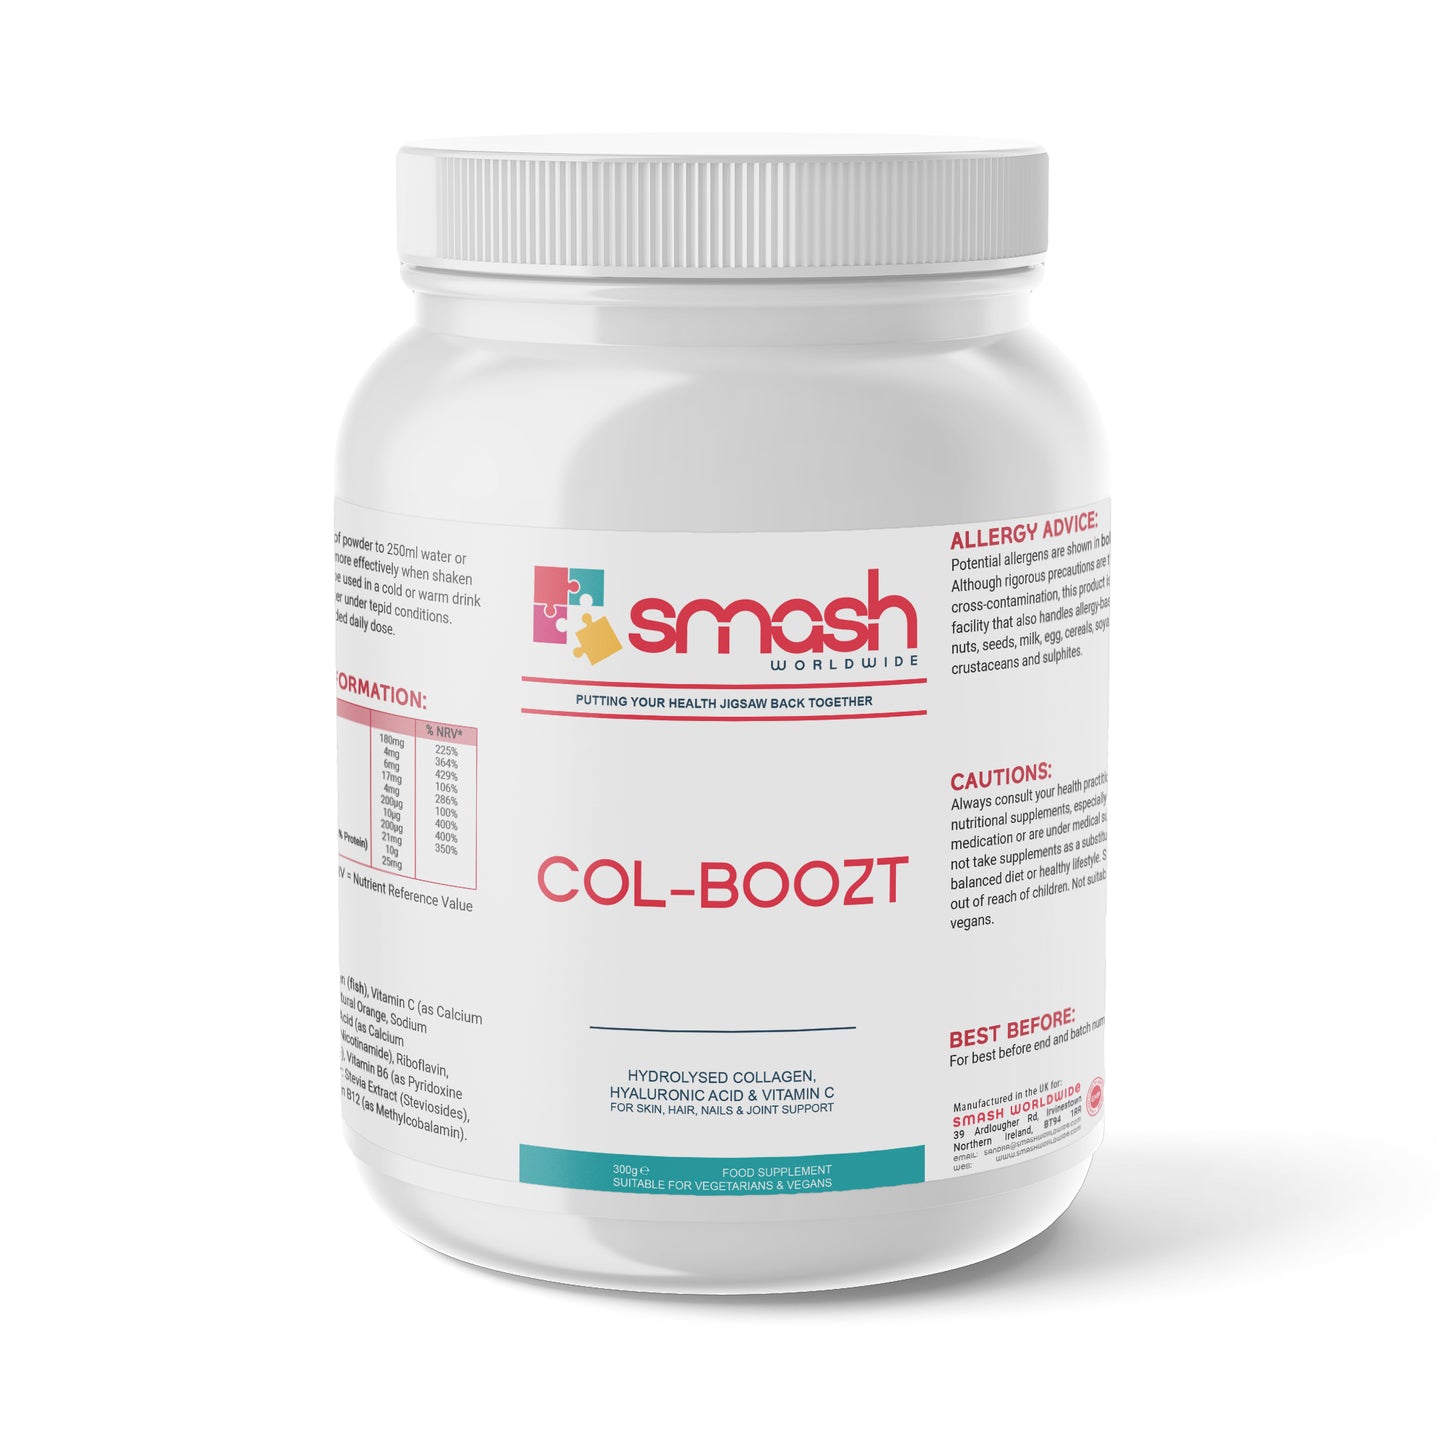 Col-Boozt SMASH Worldwide Collagen Powder